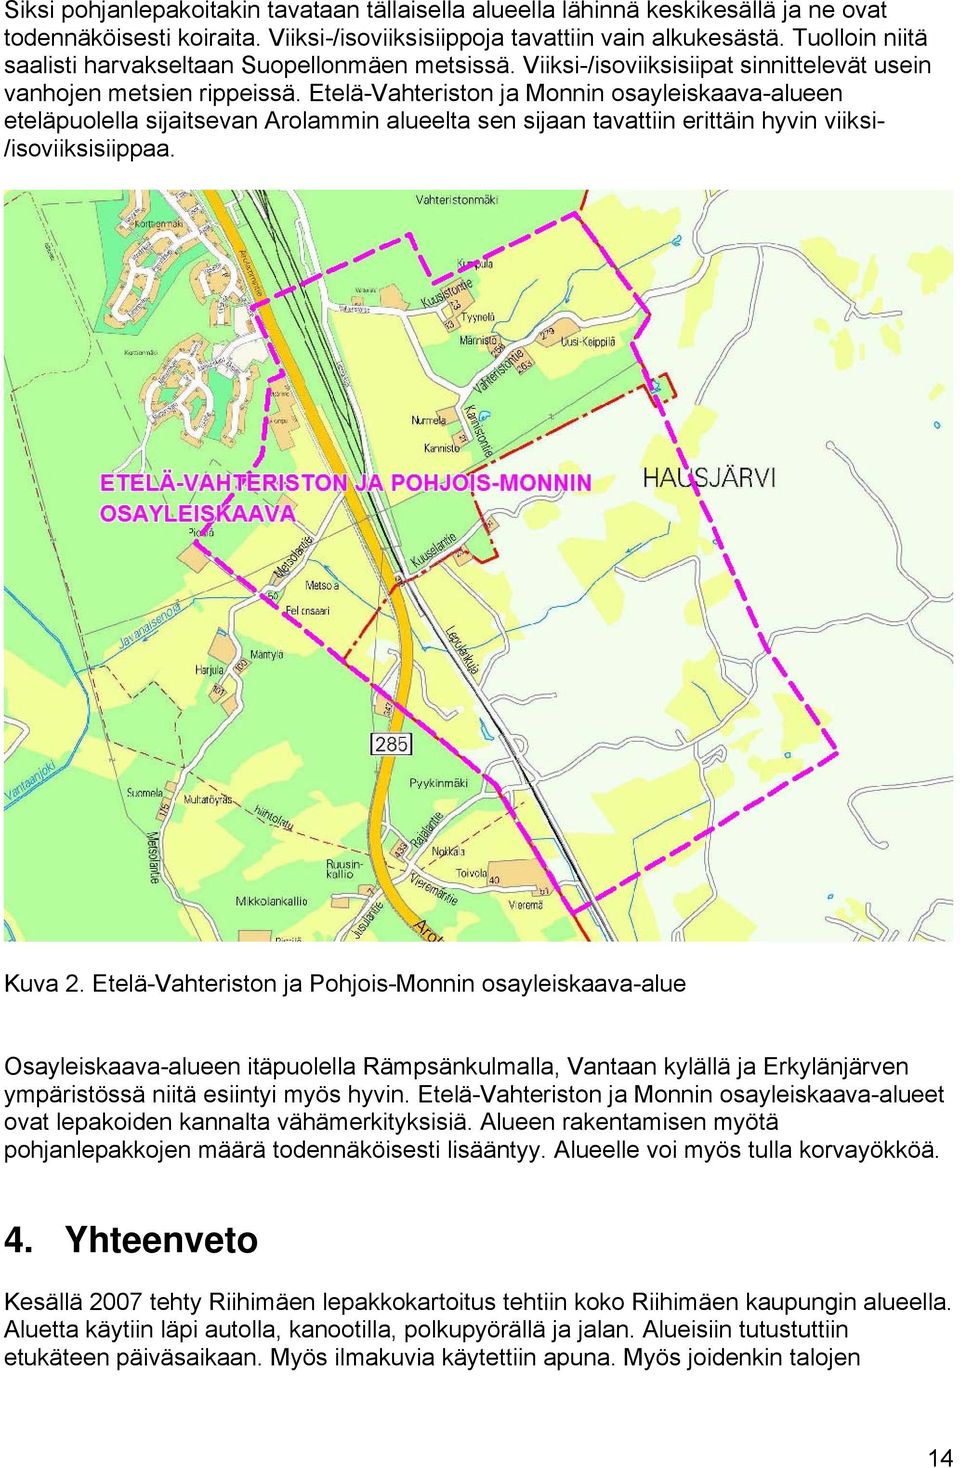 Etelä-Vahteriston ja Monnin osayleiskaava-alueen eteläpuolella sijaitsevan Arolammin alueelta sen sijaan tavattiin erittäin hyvin viiksi- /isoviiksisiippaa. Kuva 2.